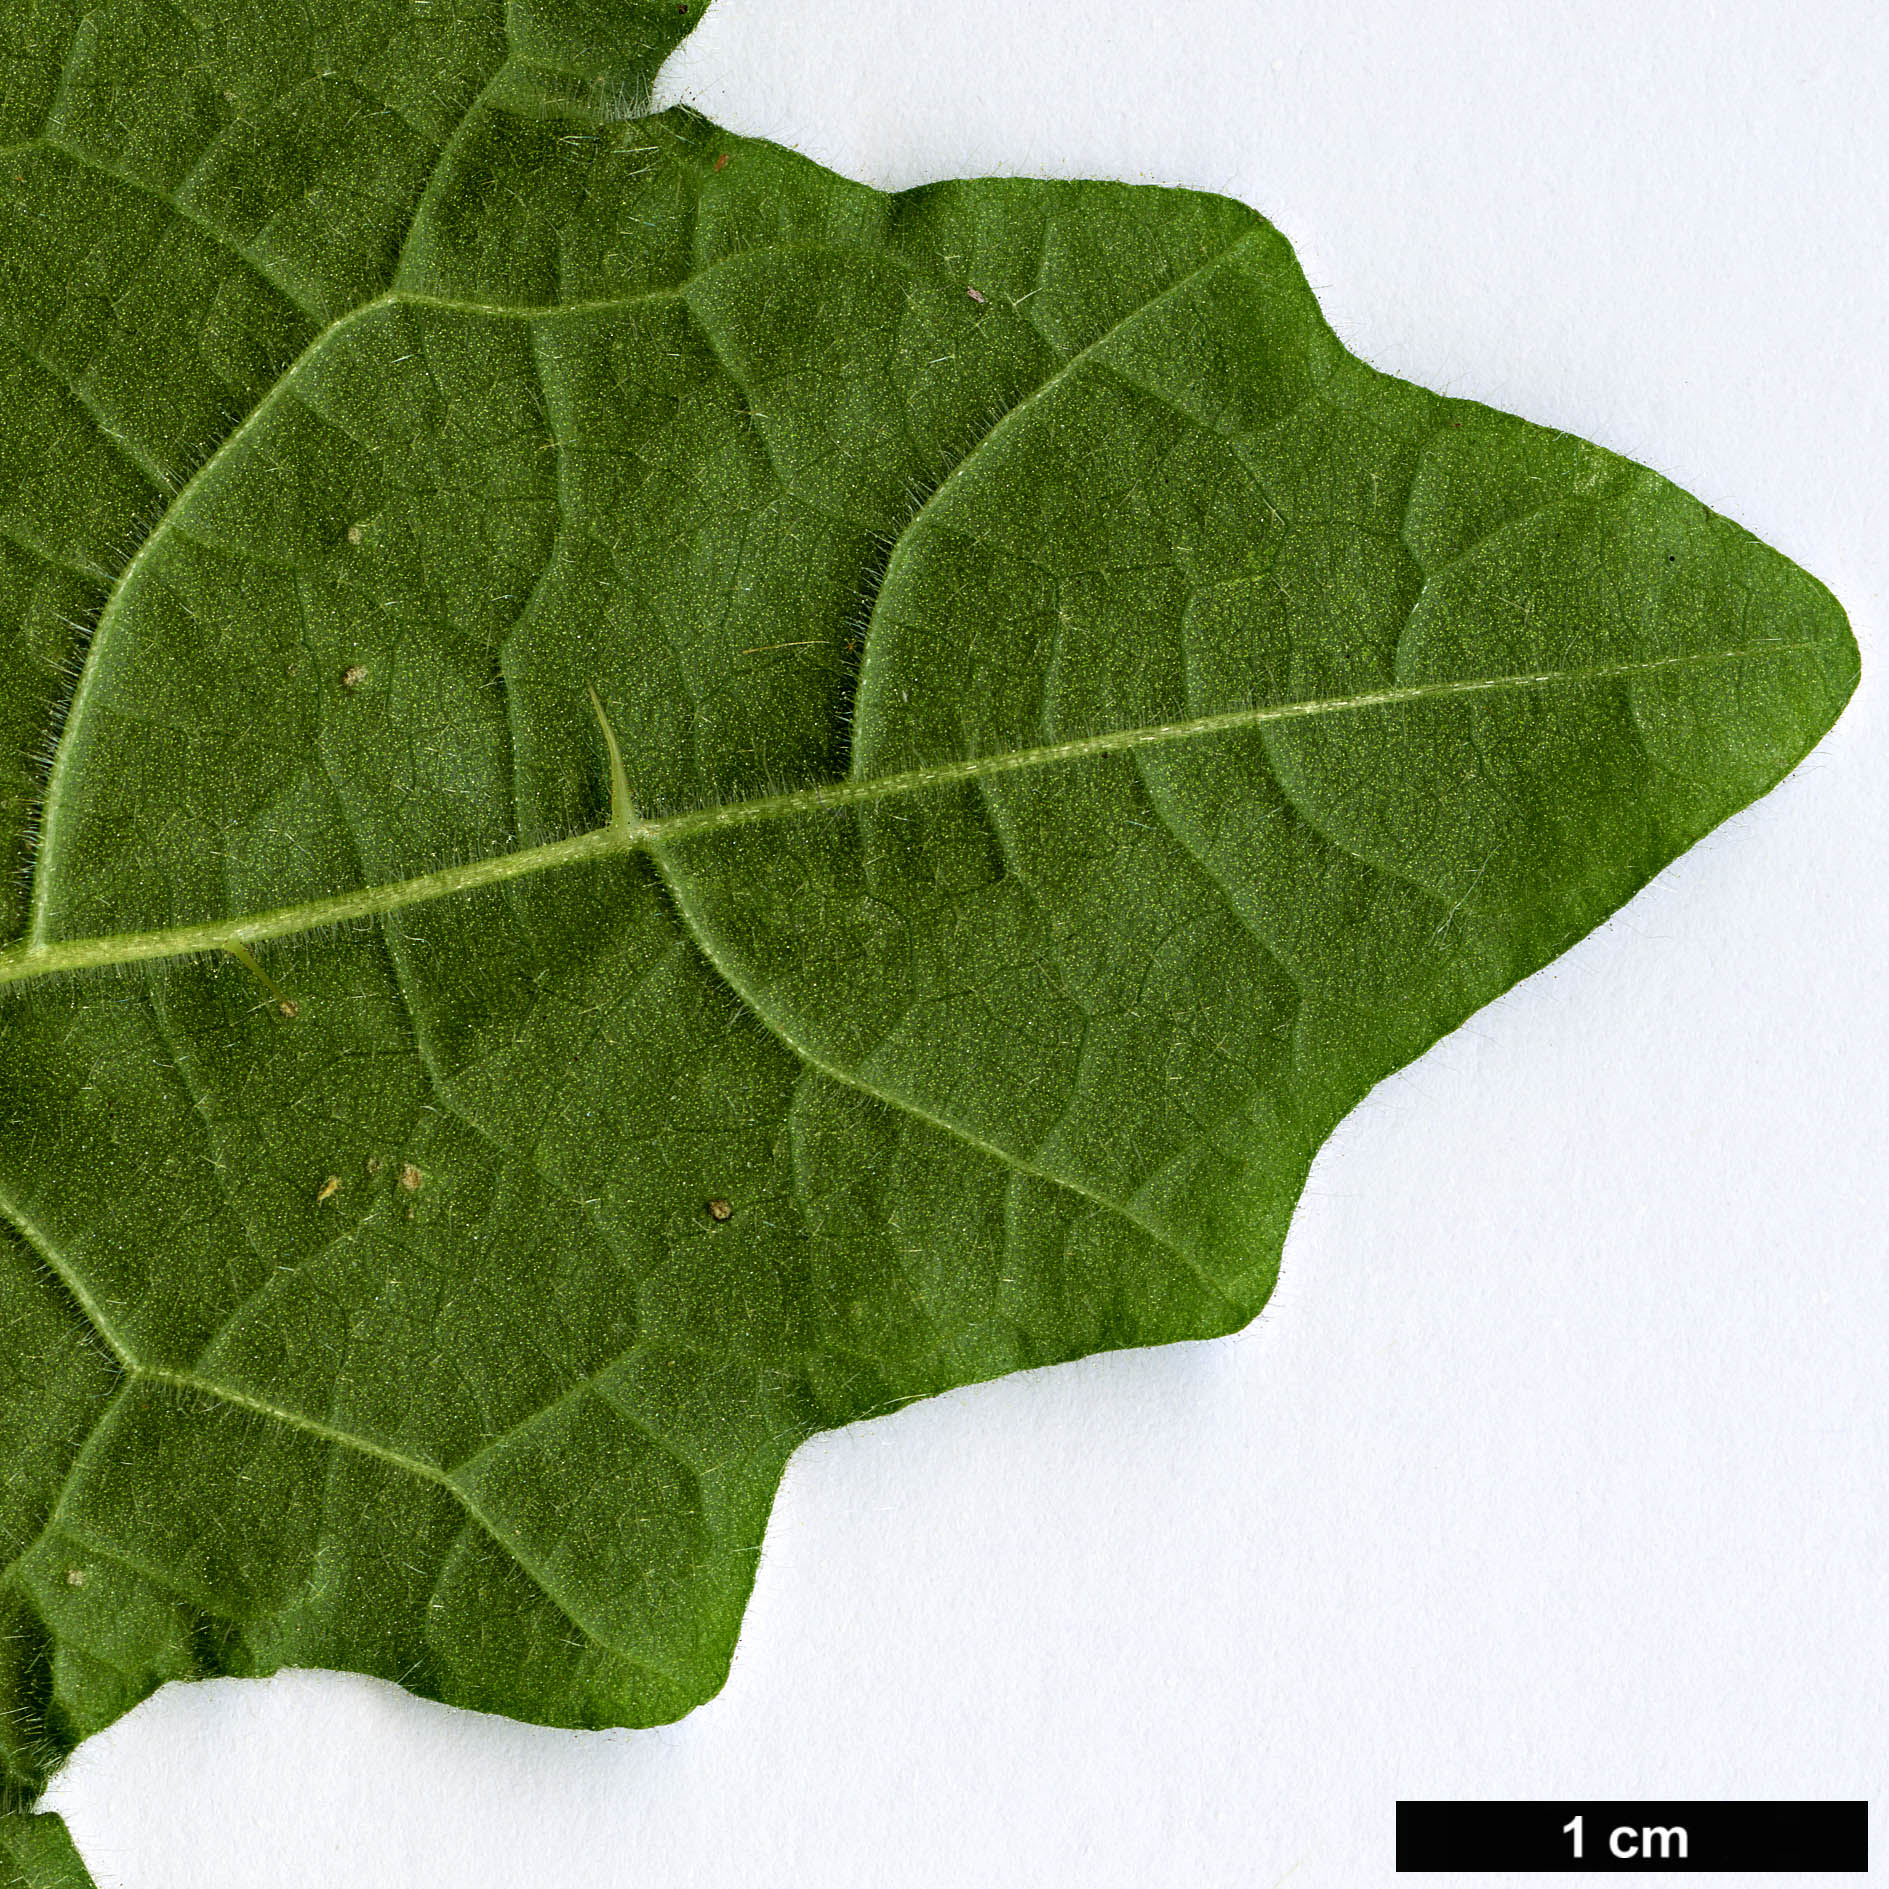 High resolution image: Family: Solanaceae - Genus: Solanum - Taxon: viarum